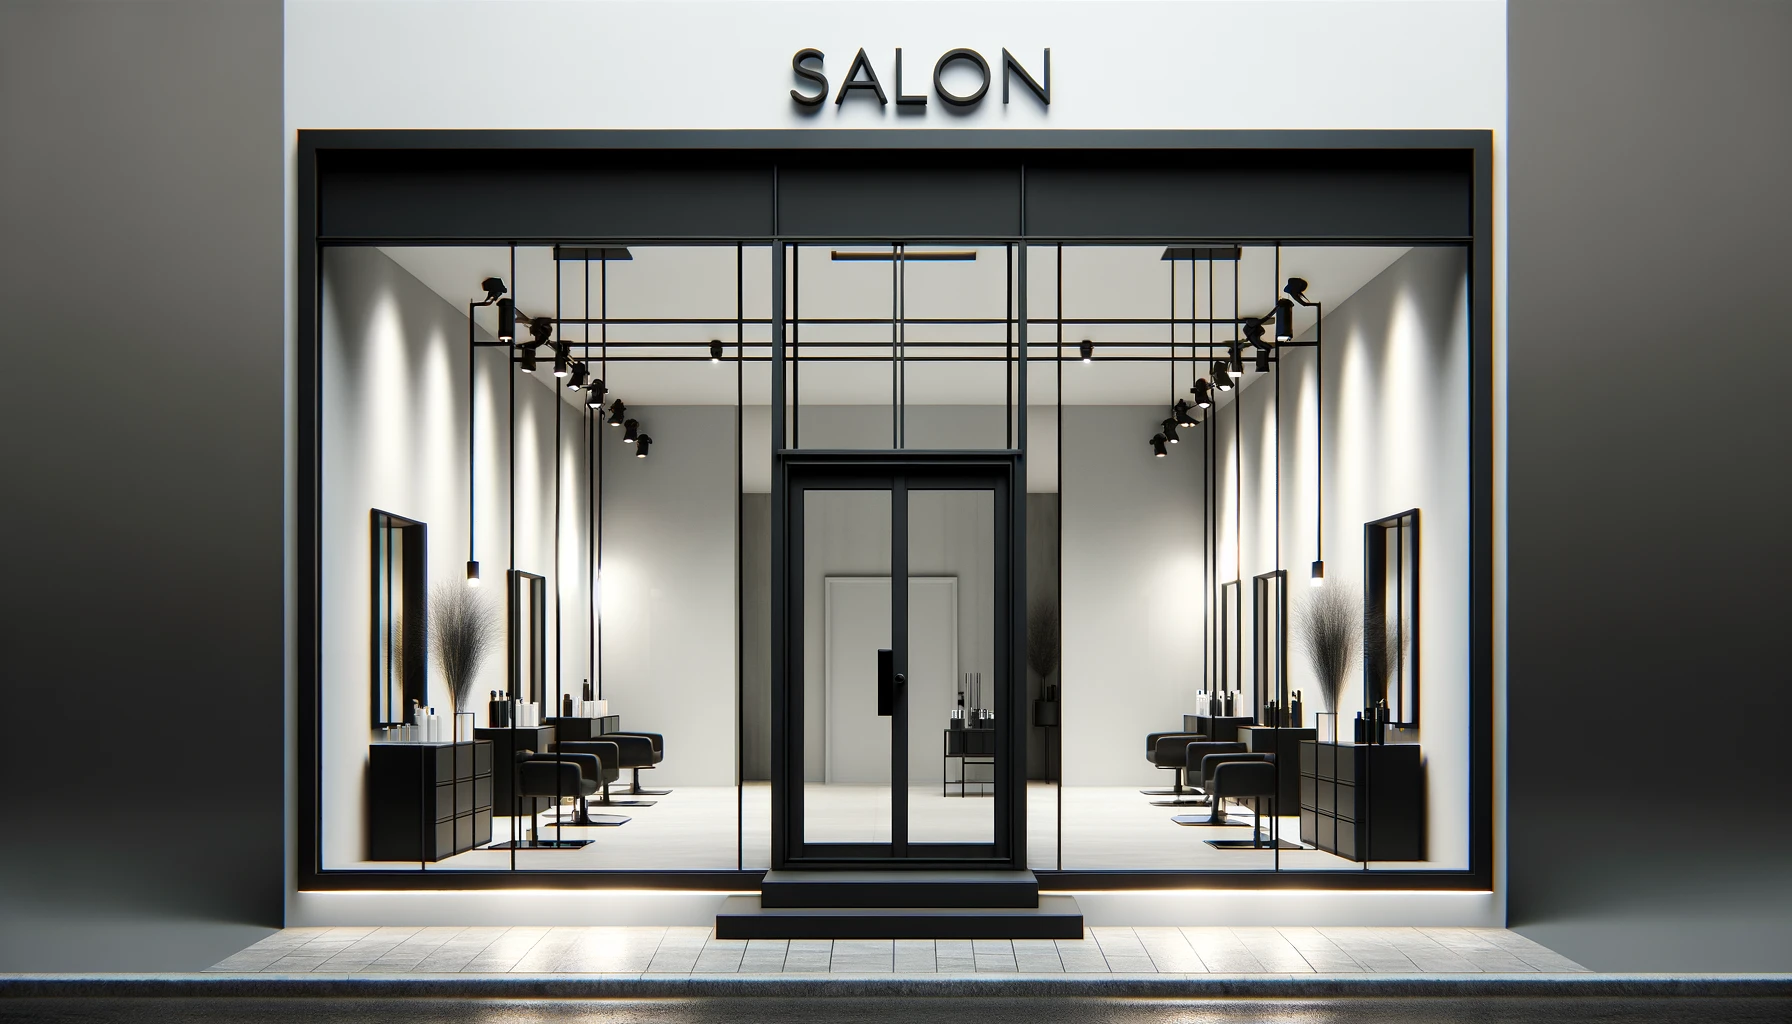 salon shop front design ideas